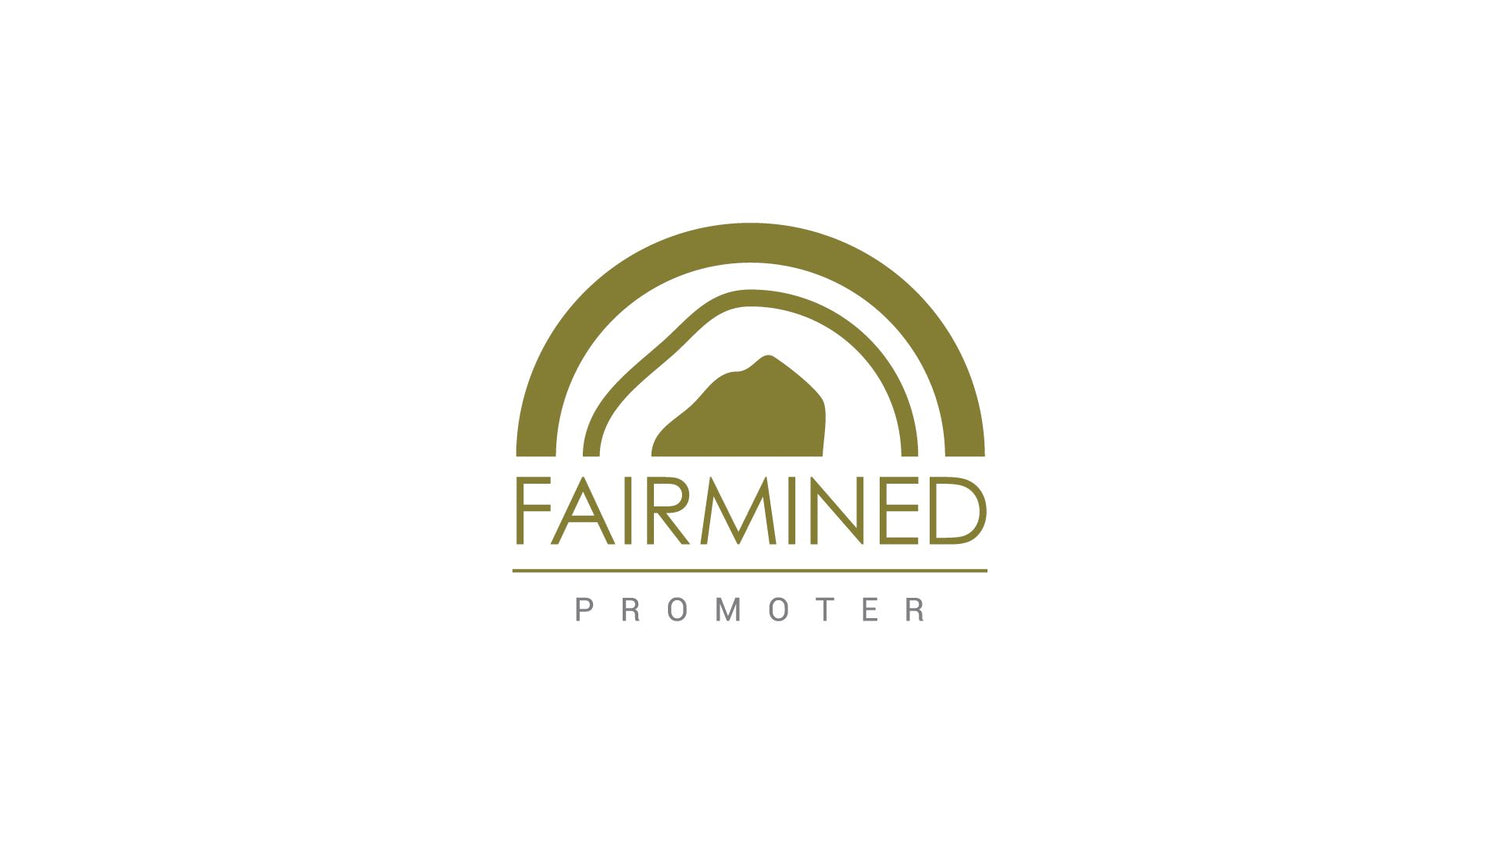 Logo Fairmined